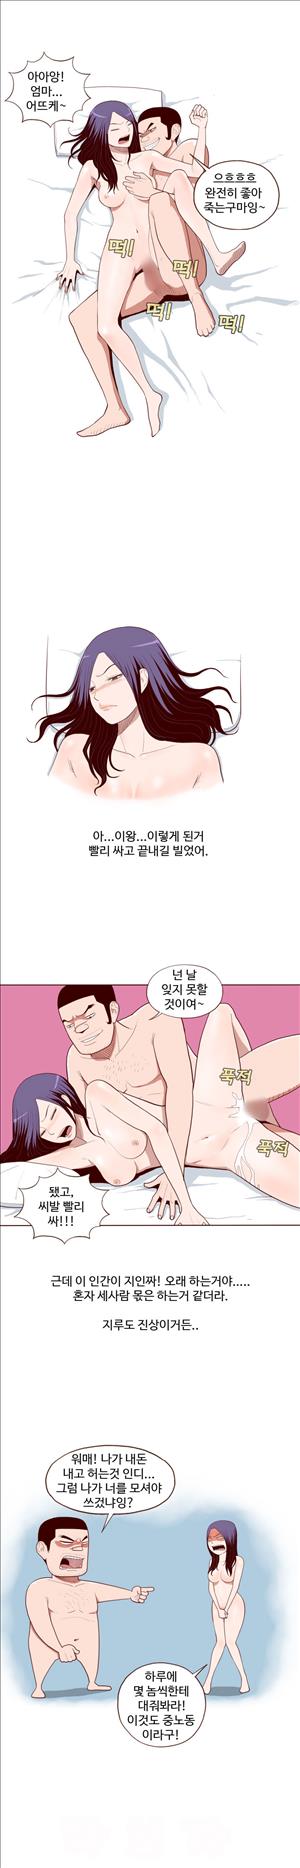 미색 - 썰만화 시즌4 51화 - 오피녀의 비밀(중)_2